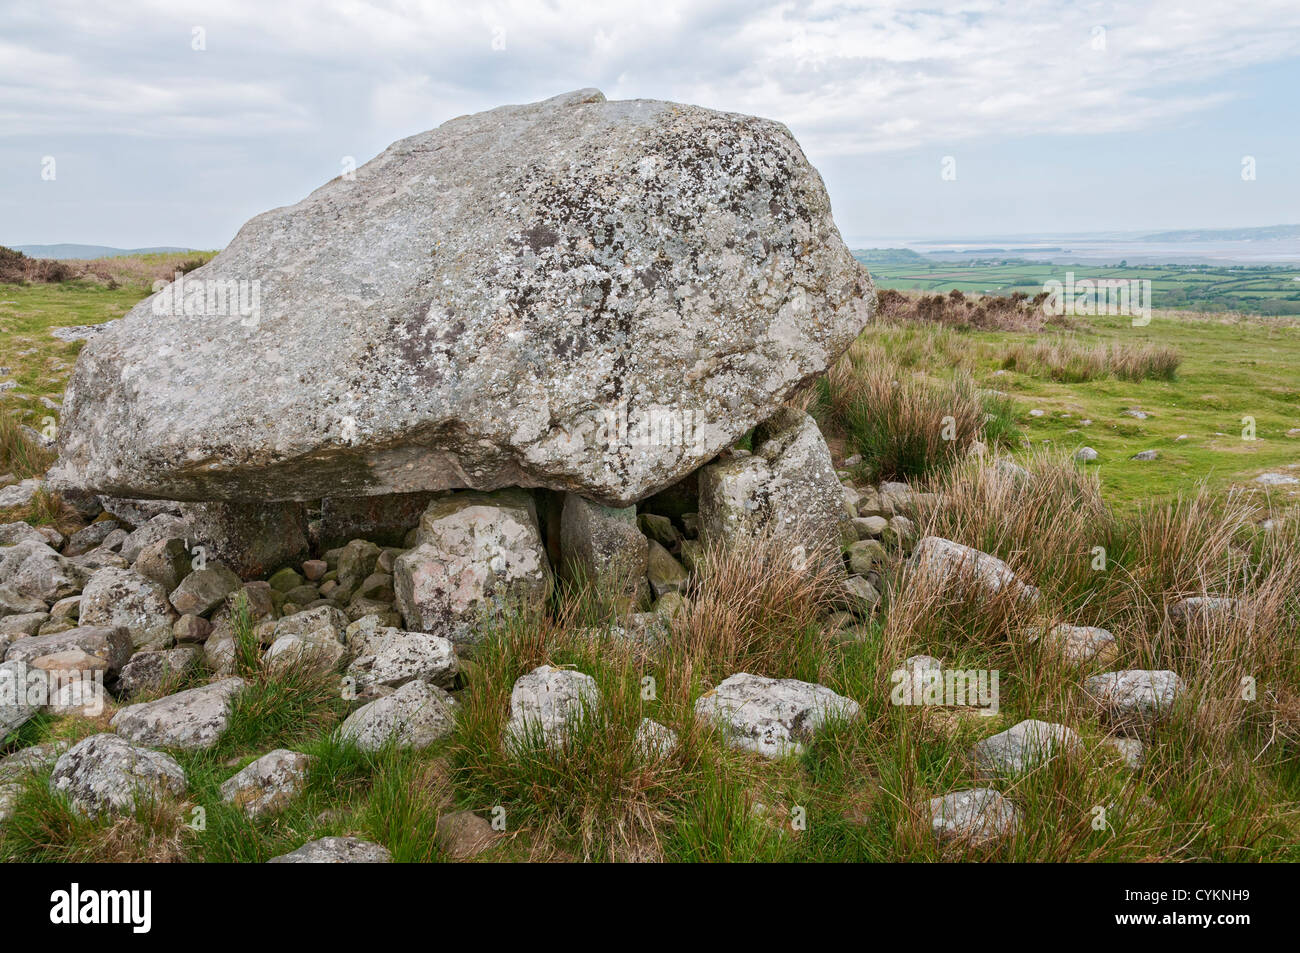 Pays de Galles, la péninsule de Gower, Cefn Bryn, Arthur's Stone, sépulture néolithique tombe date de 2500 Portail de la Colombie-Britannique. Banque D'Images